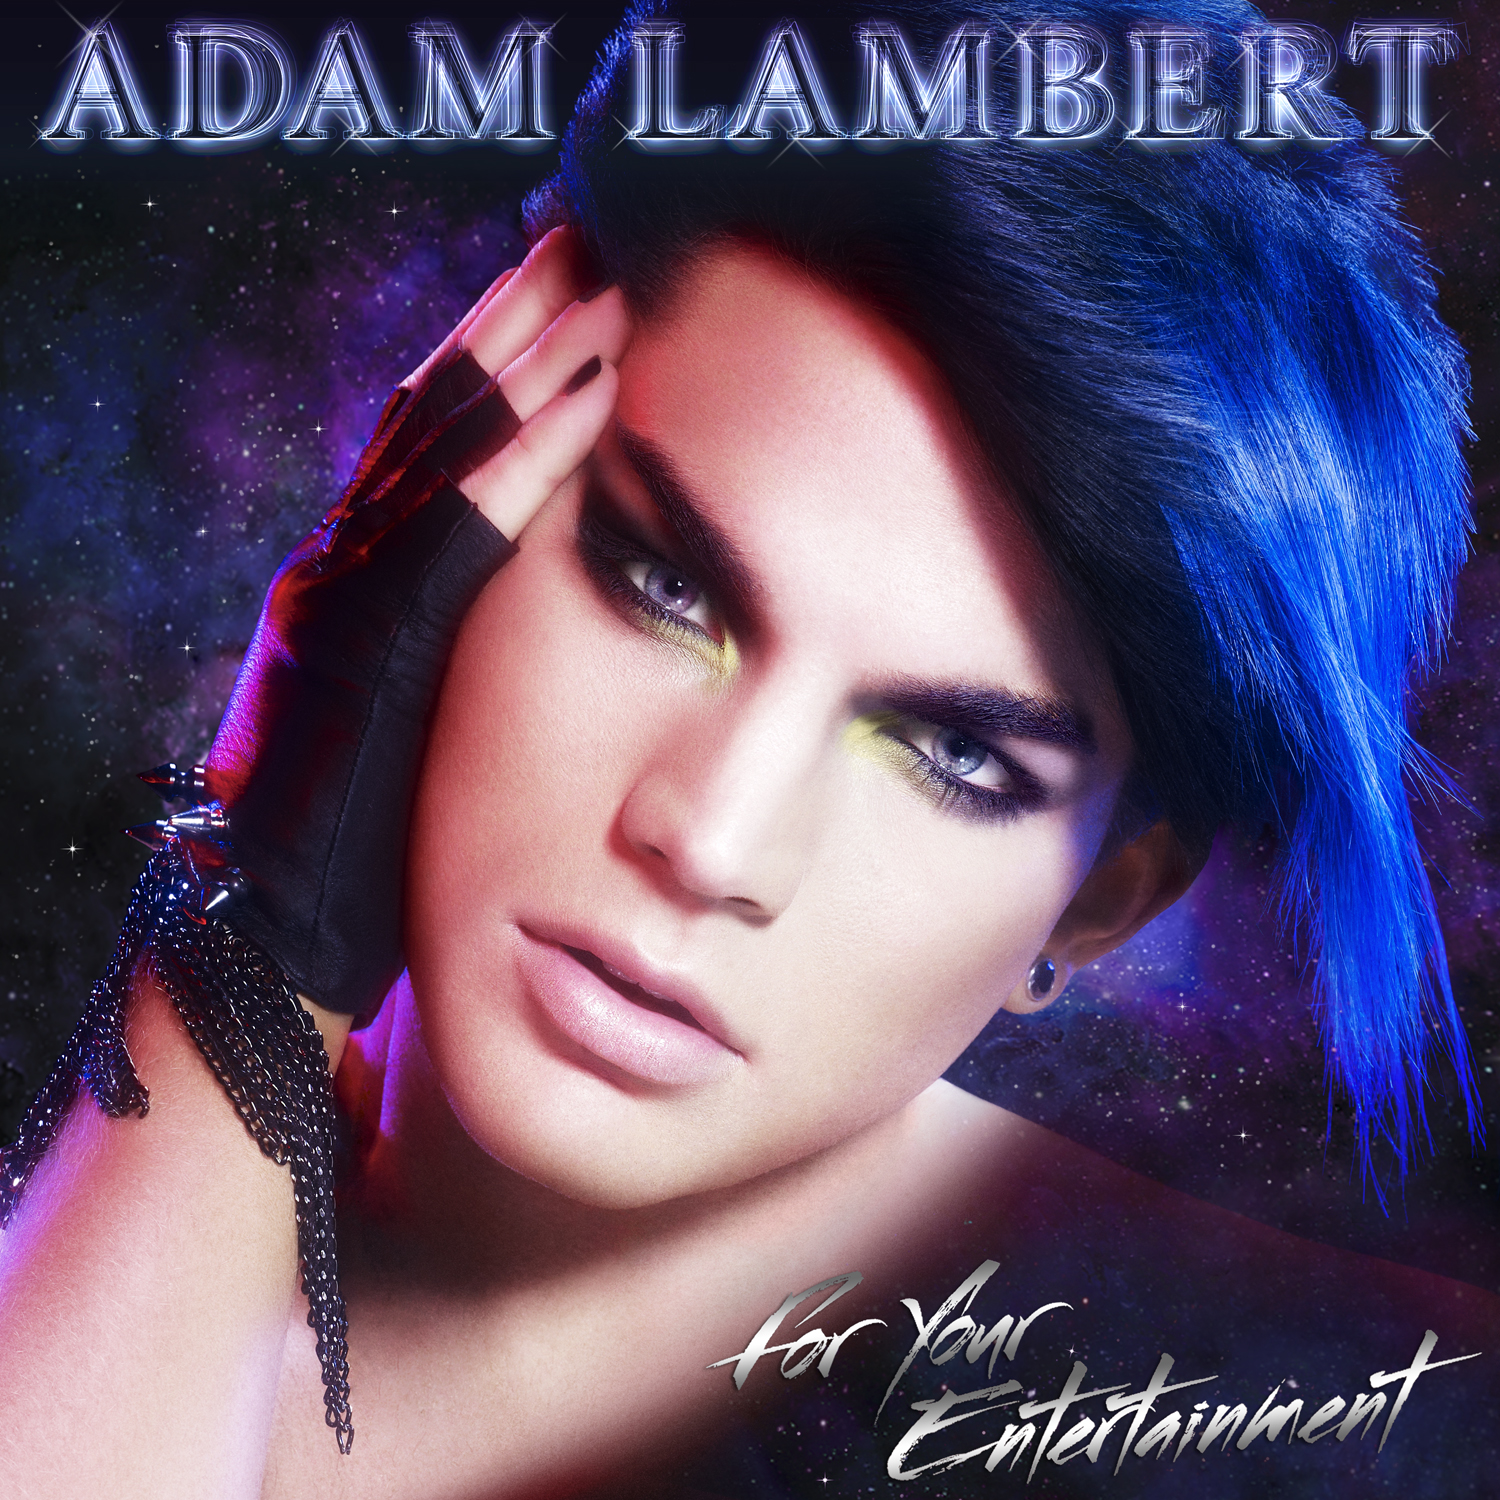 Terrible image of Adam Lambert